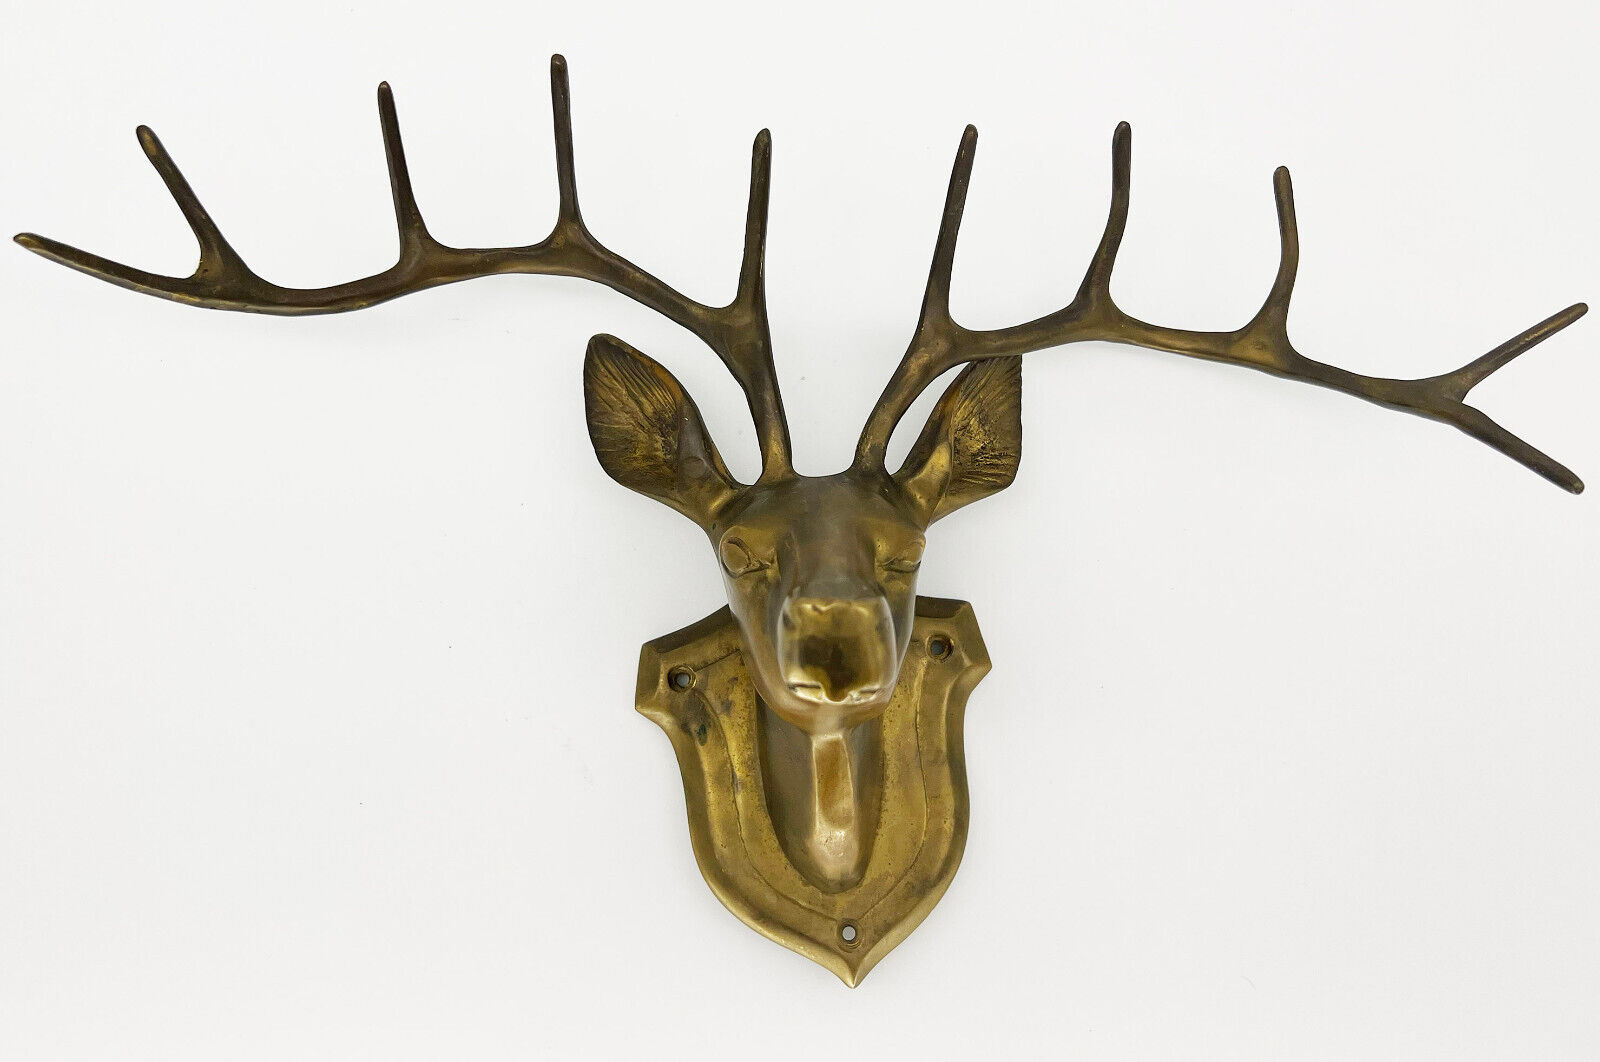 VTG. Cast Antique Brass Decorative Deer Head Wall Mount Stag Trophy Antler Rack